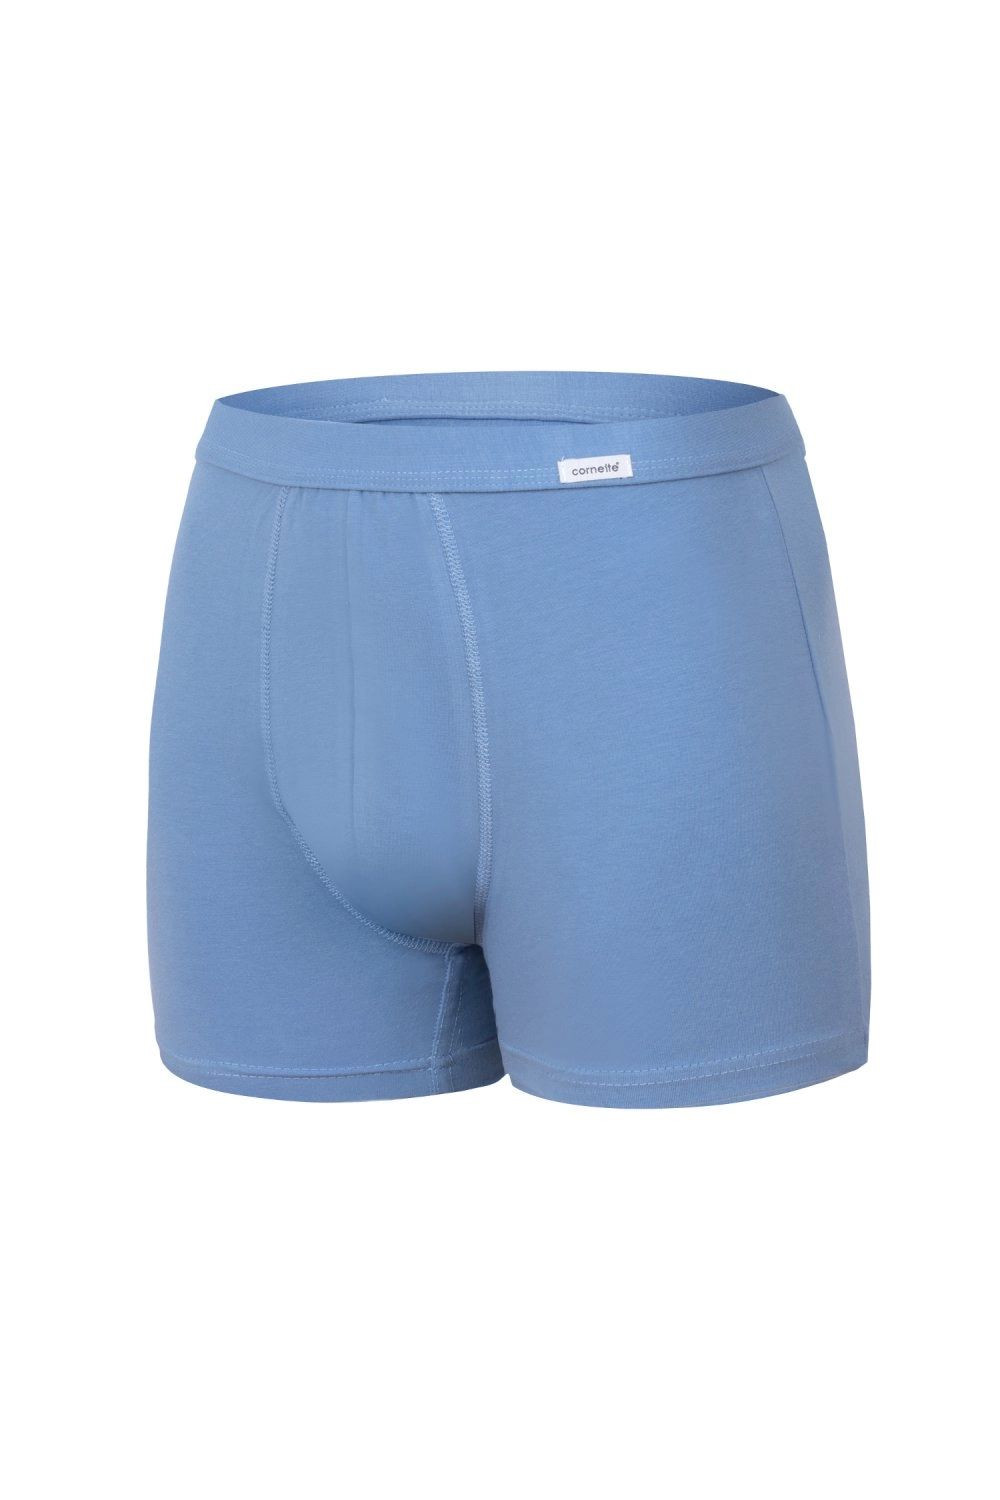 Pánské boxerky 220 Authentic light blue - CORNETTE Barva: světle modrá, Velikost: XXL